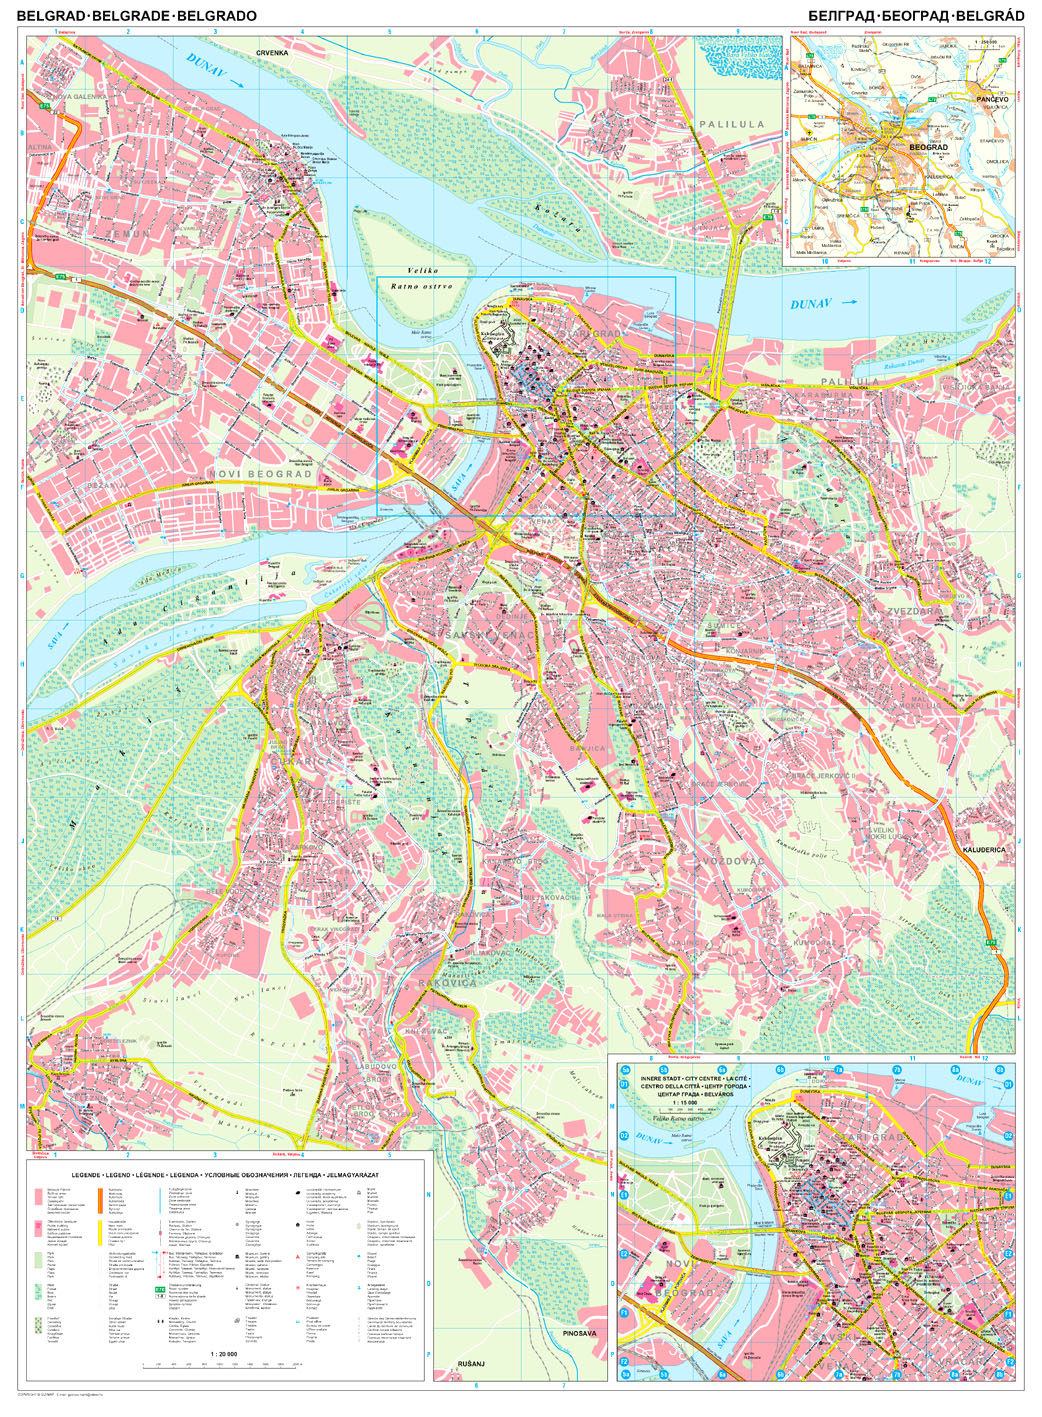 Belgrade overview map